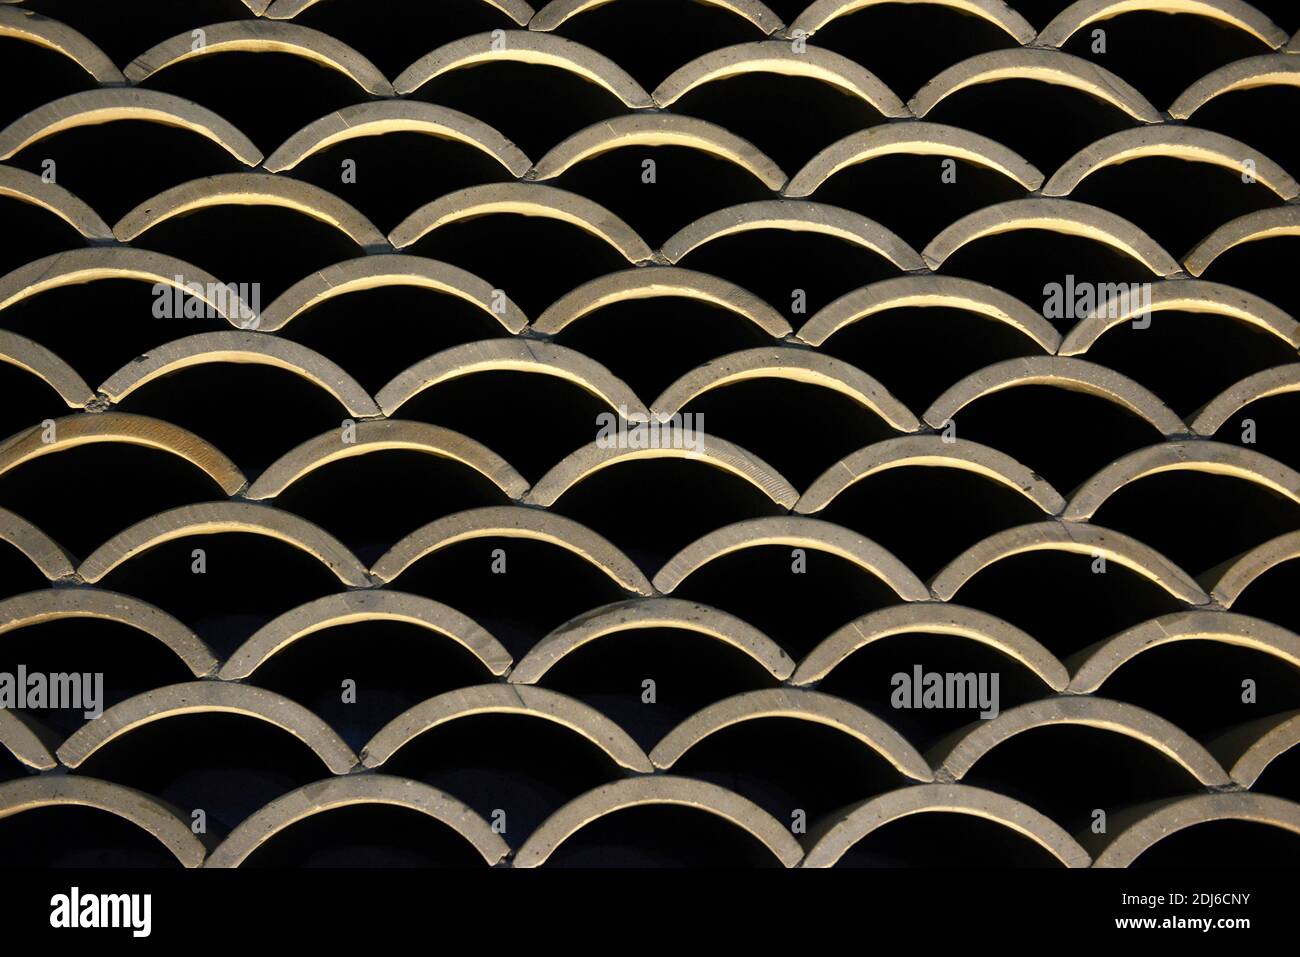 Pareti realizzate in tegole ricurve presso il centro commerciale sotterraneo del Parco Olimpico nel centro nord di Pechino, Cina Foto Stock